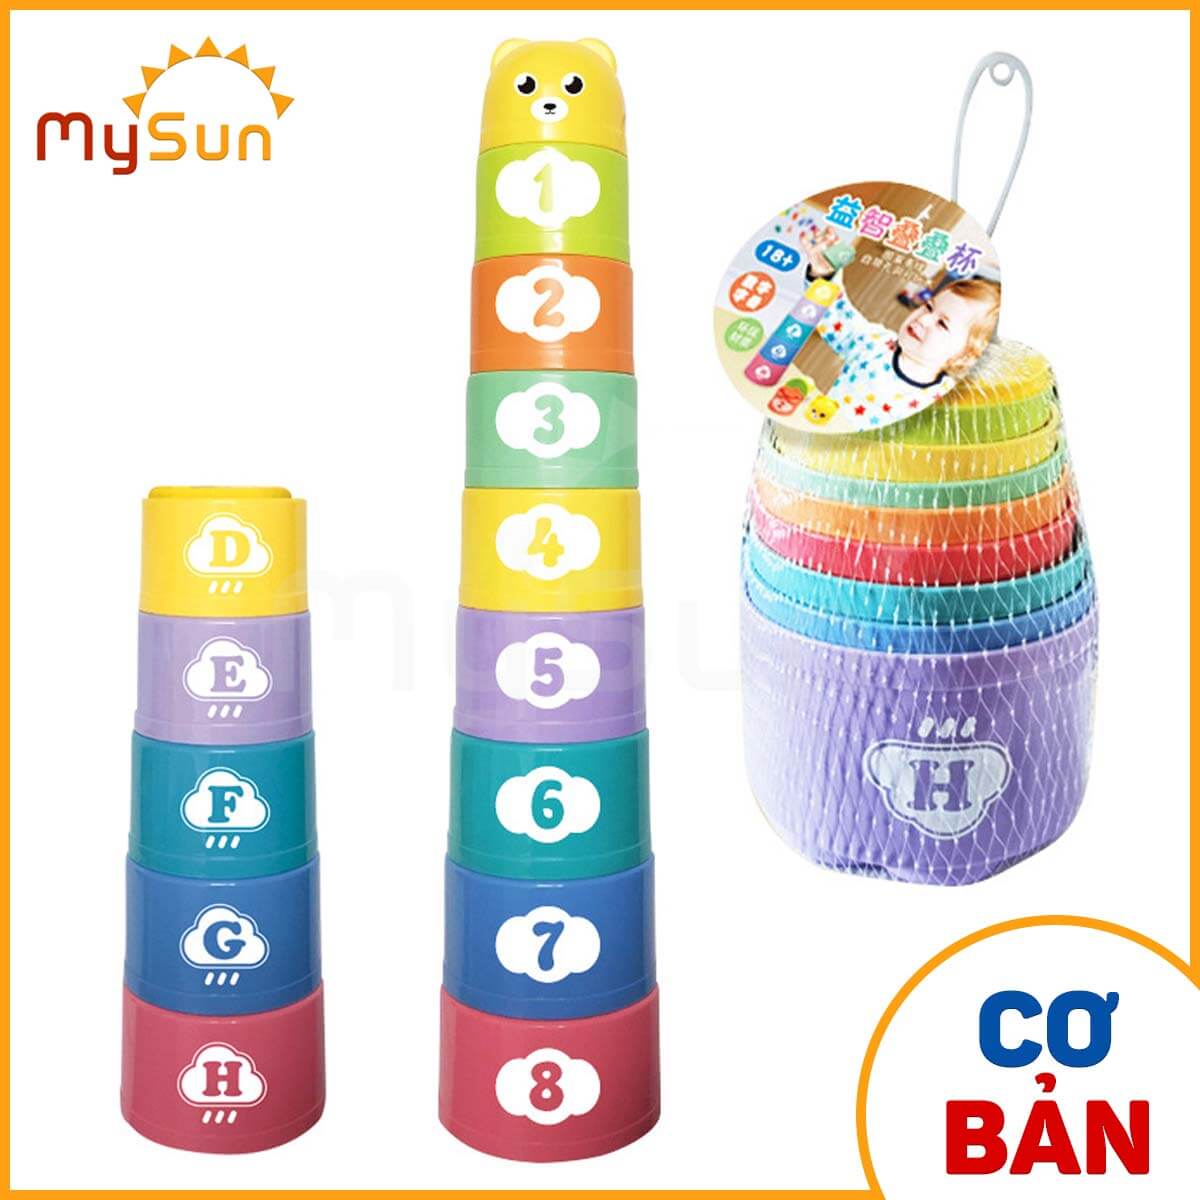 Đồ chơi xếp tháp chồng cốc thông minh giáo dục trí tuệ  cho bé học tập đếm số và chữ cái cho bé MySun